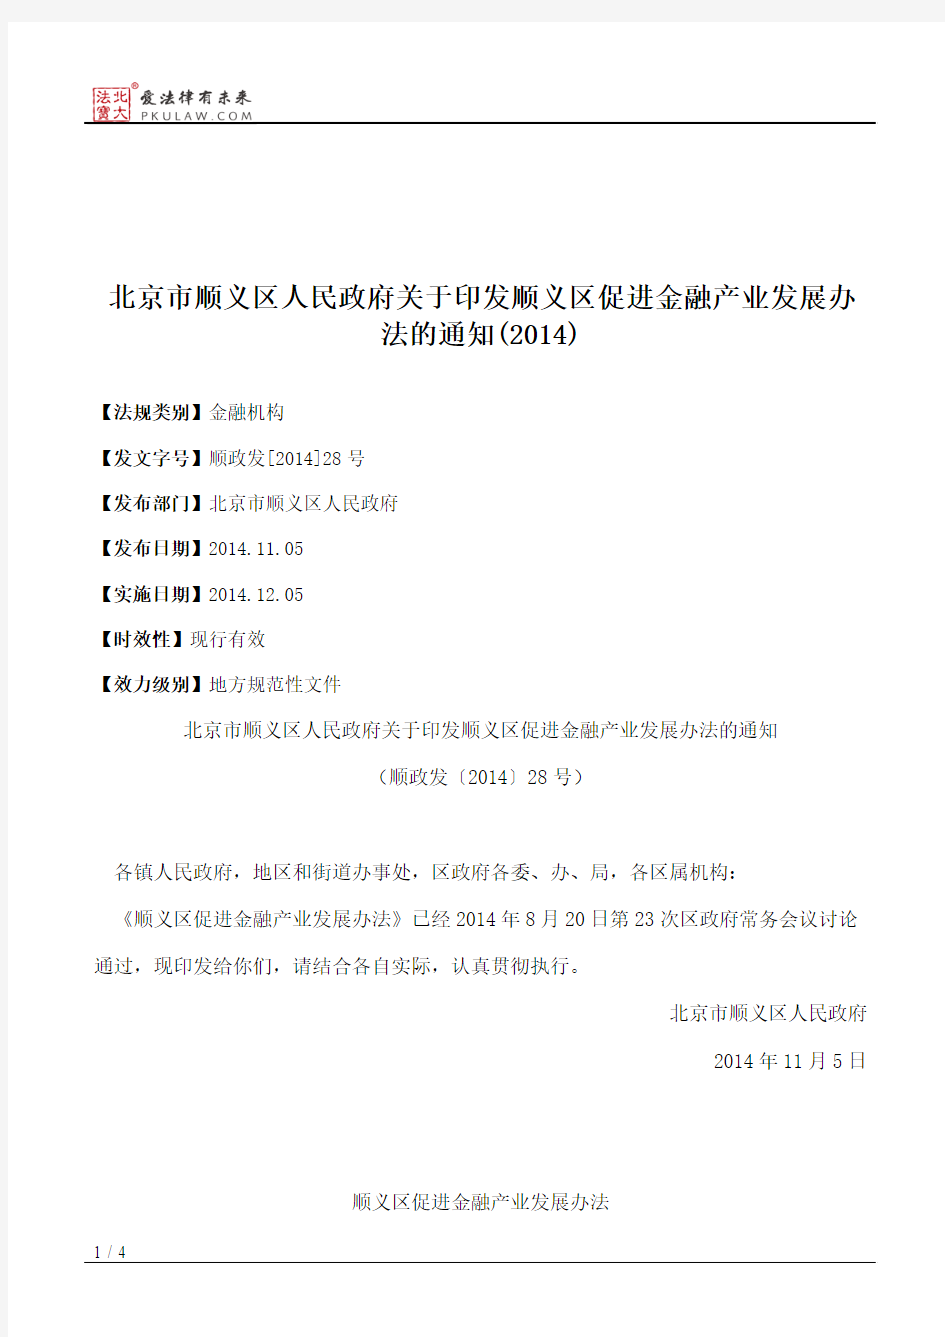 北京市顺义区人民政府关于印发顺义区促进金融产业发展办法的通知(2014)